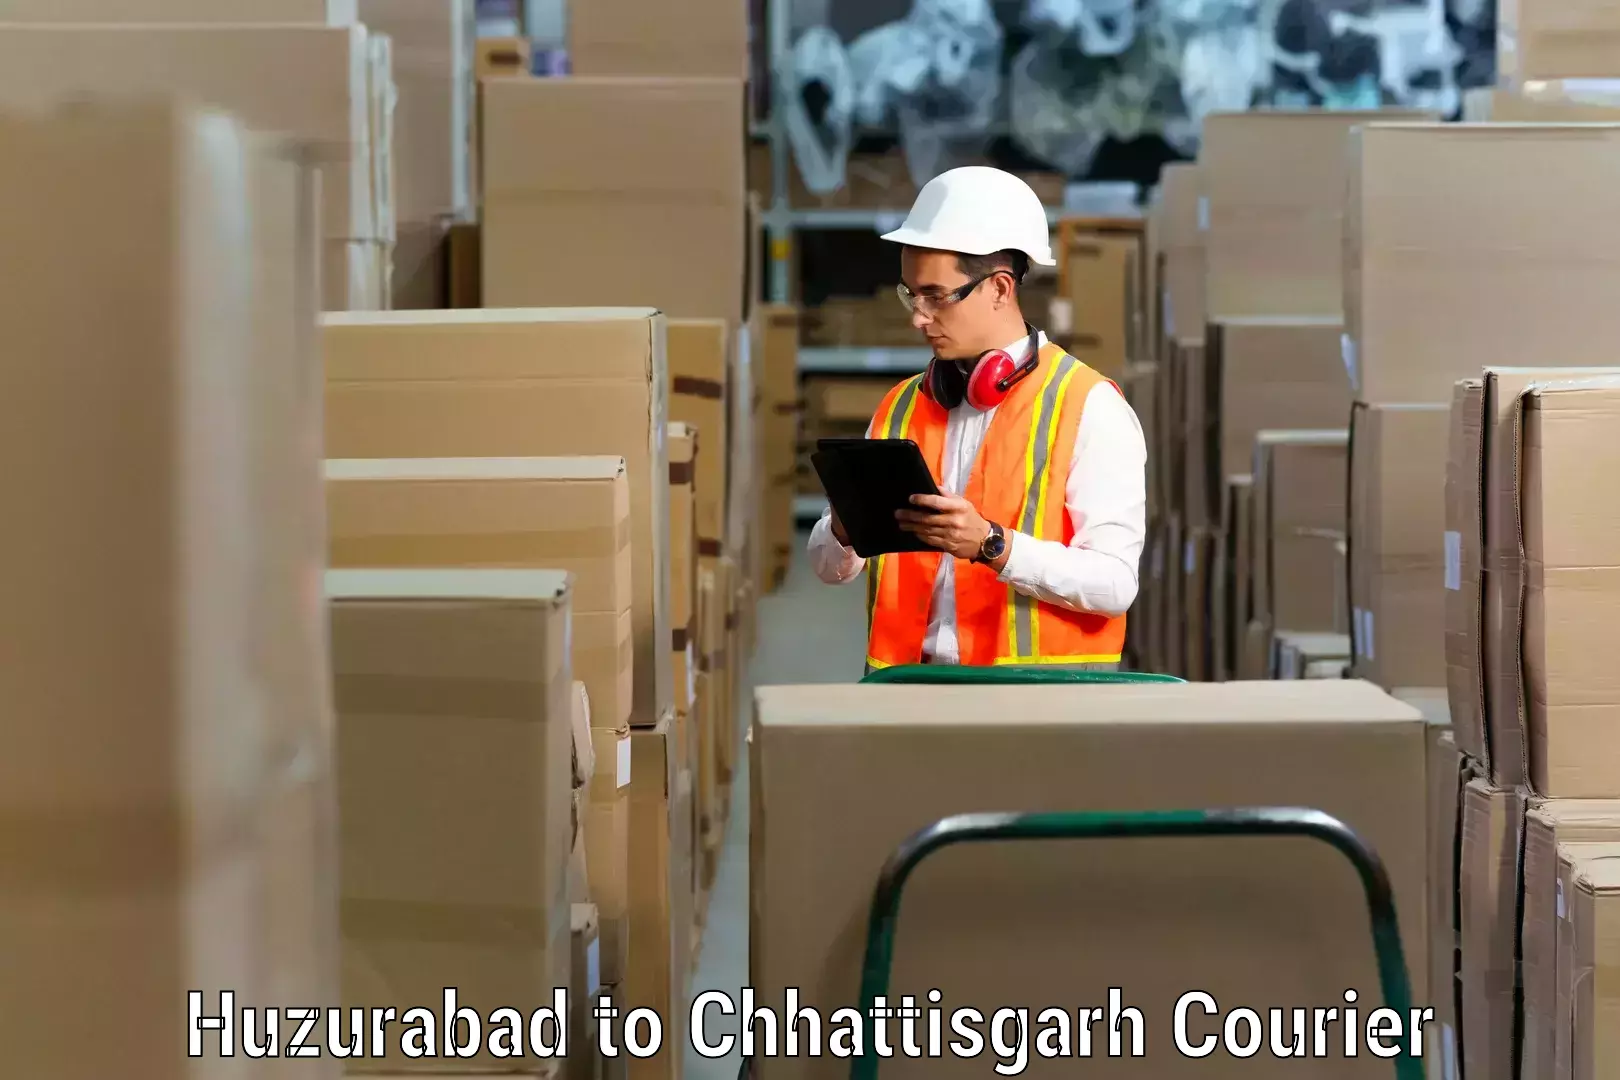 Personalized relocation plans in Huzurabad to Raigarh Chhattisgarh